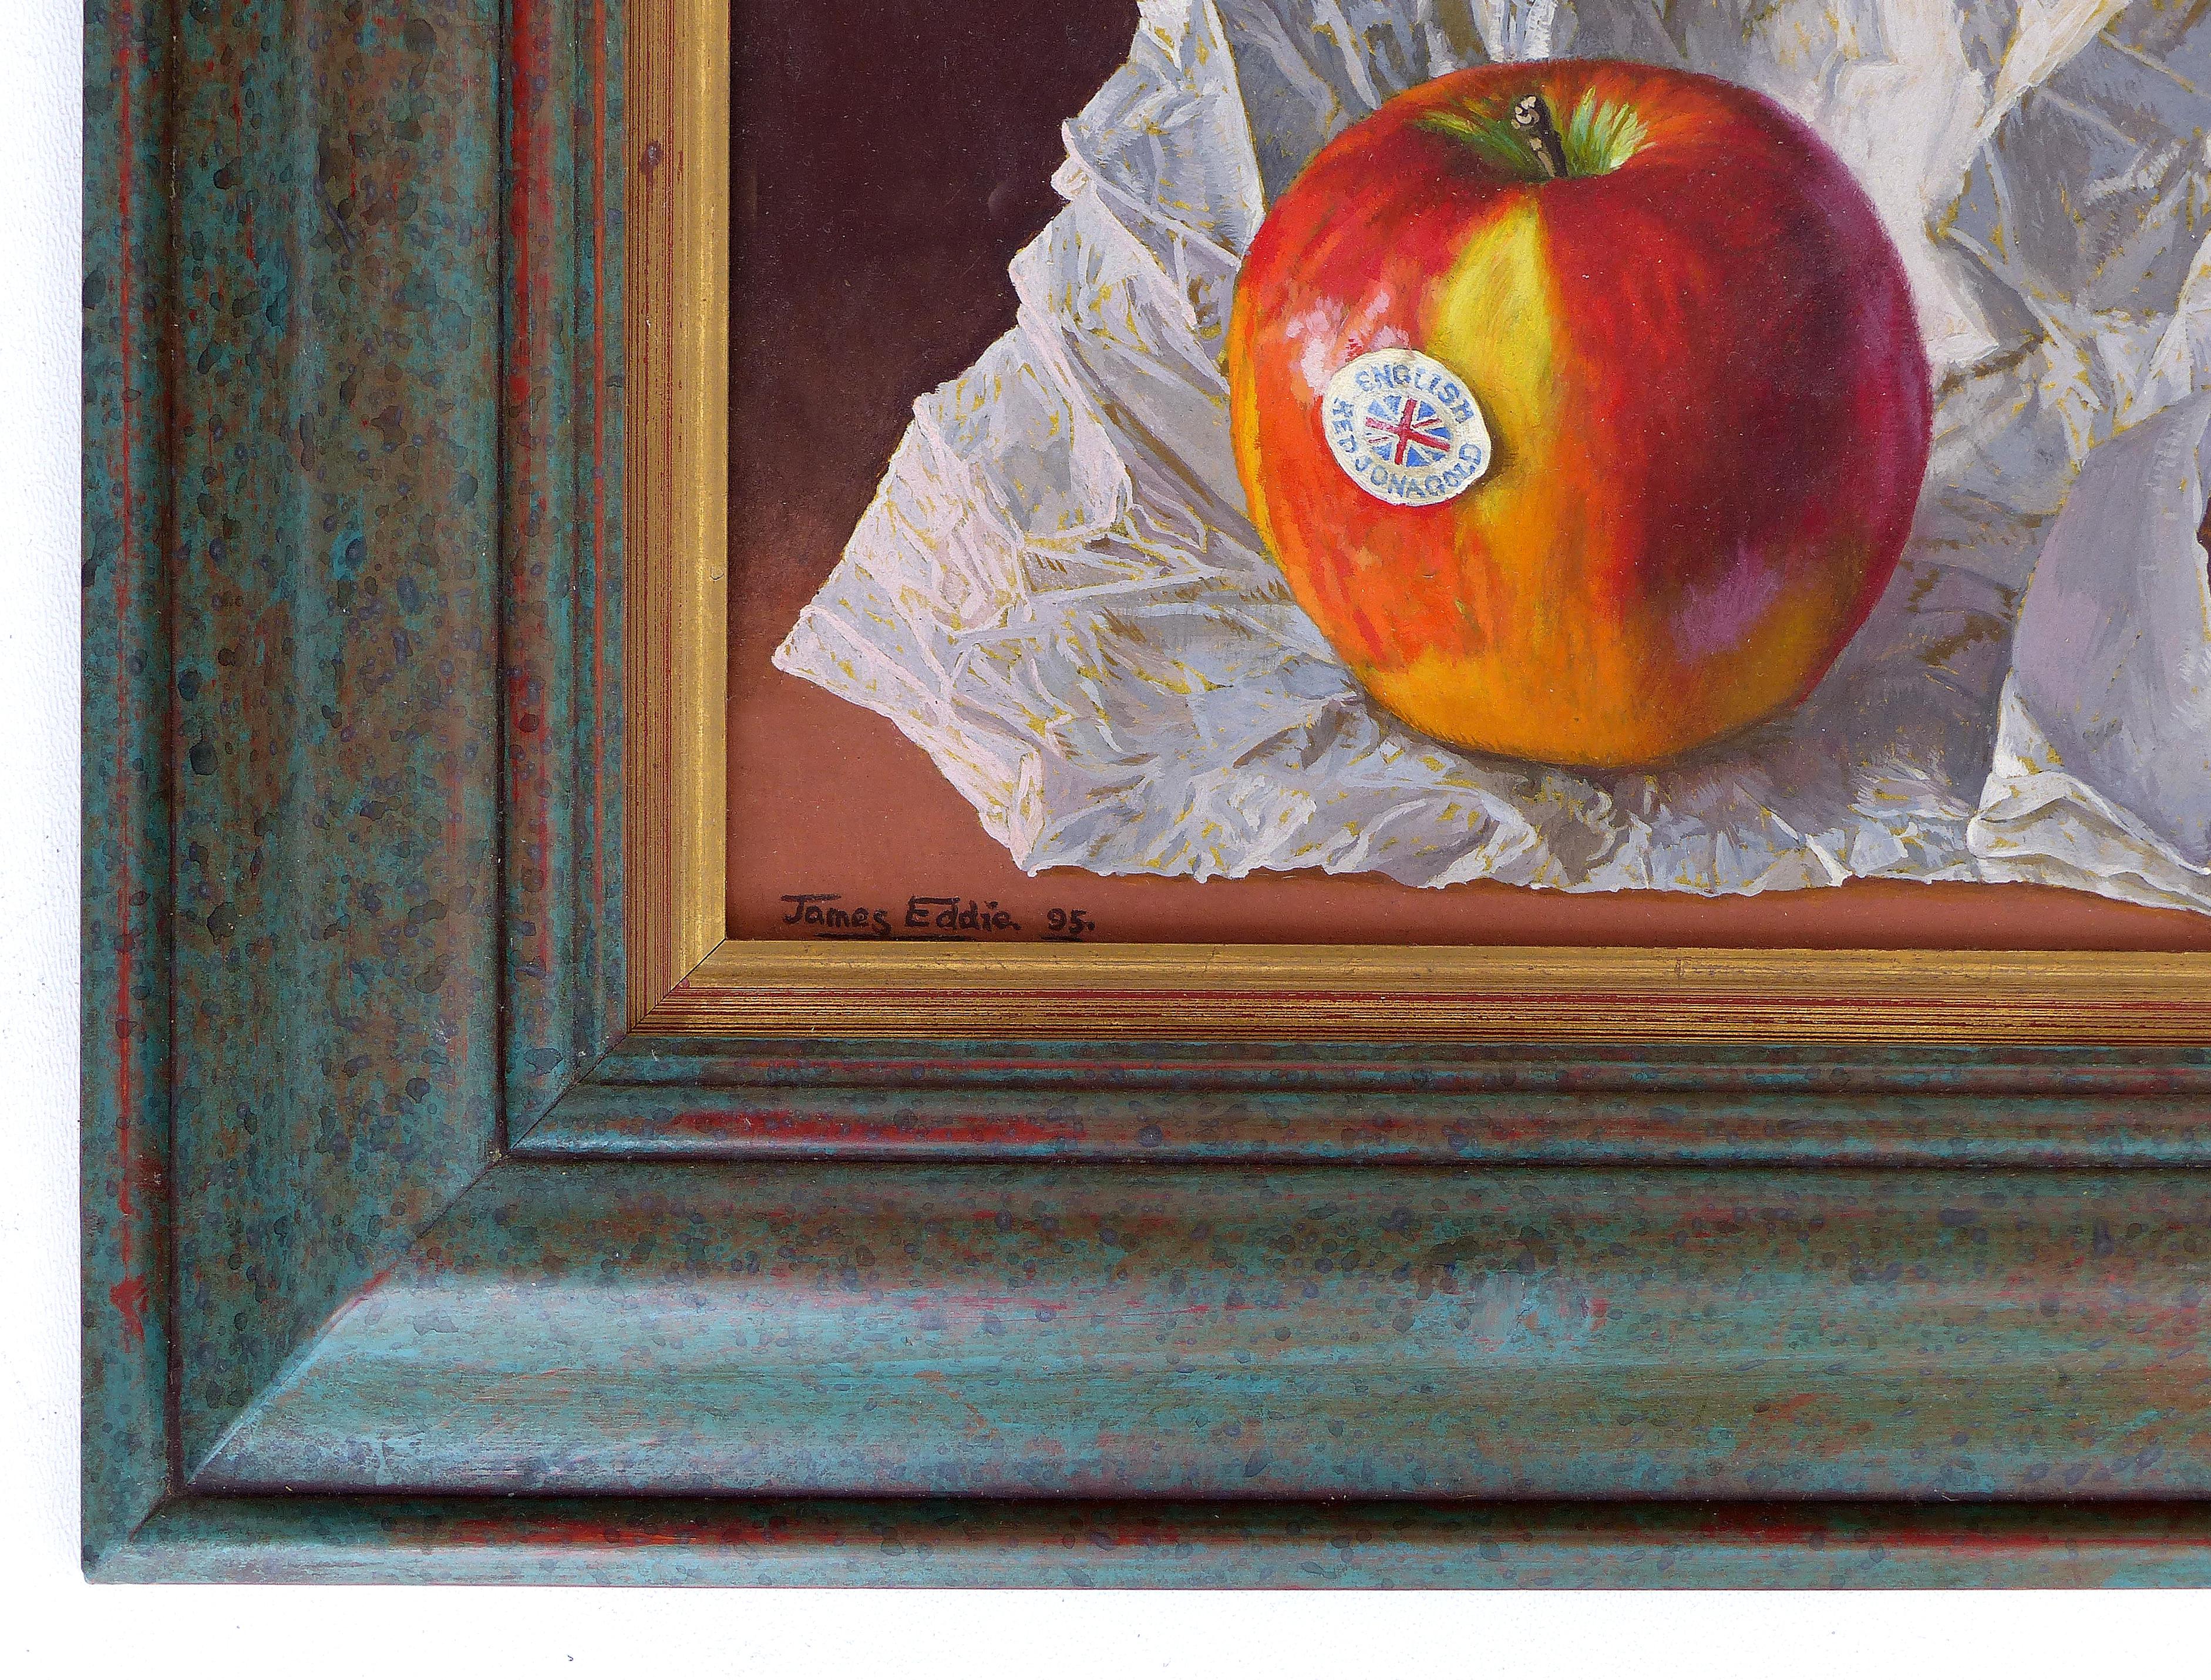 Nature morte super-réaliste, peinture de pomme par James Eddie, 1995 

La vente porte sur une nature morte super-réaliste magnifiquement exécutée par James Eddie. Le tableau est signé en bas à gauche et daté de 1995. L'œuvre est présentée dans un